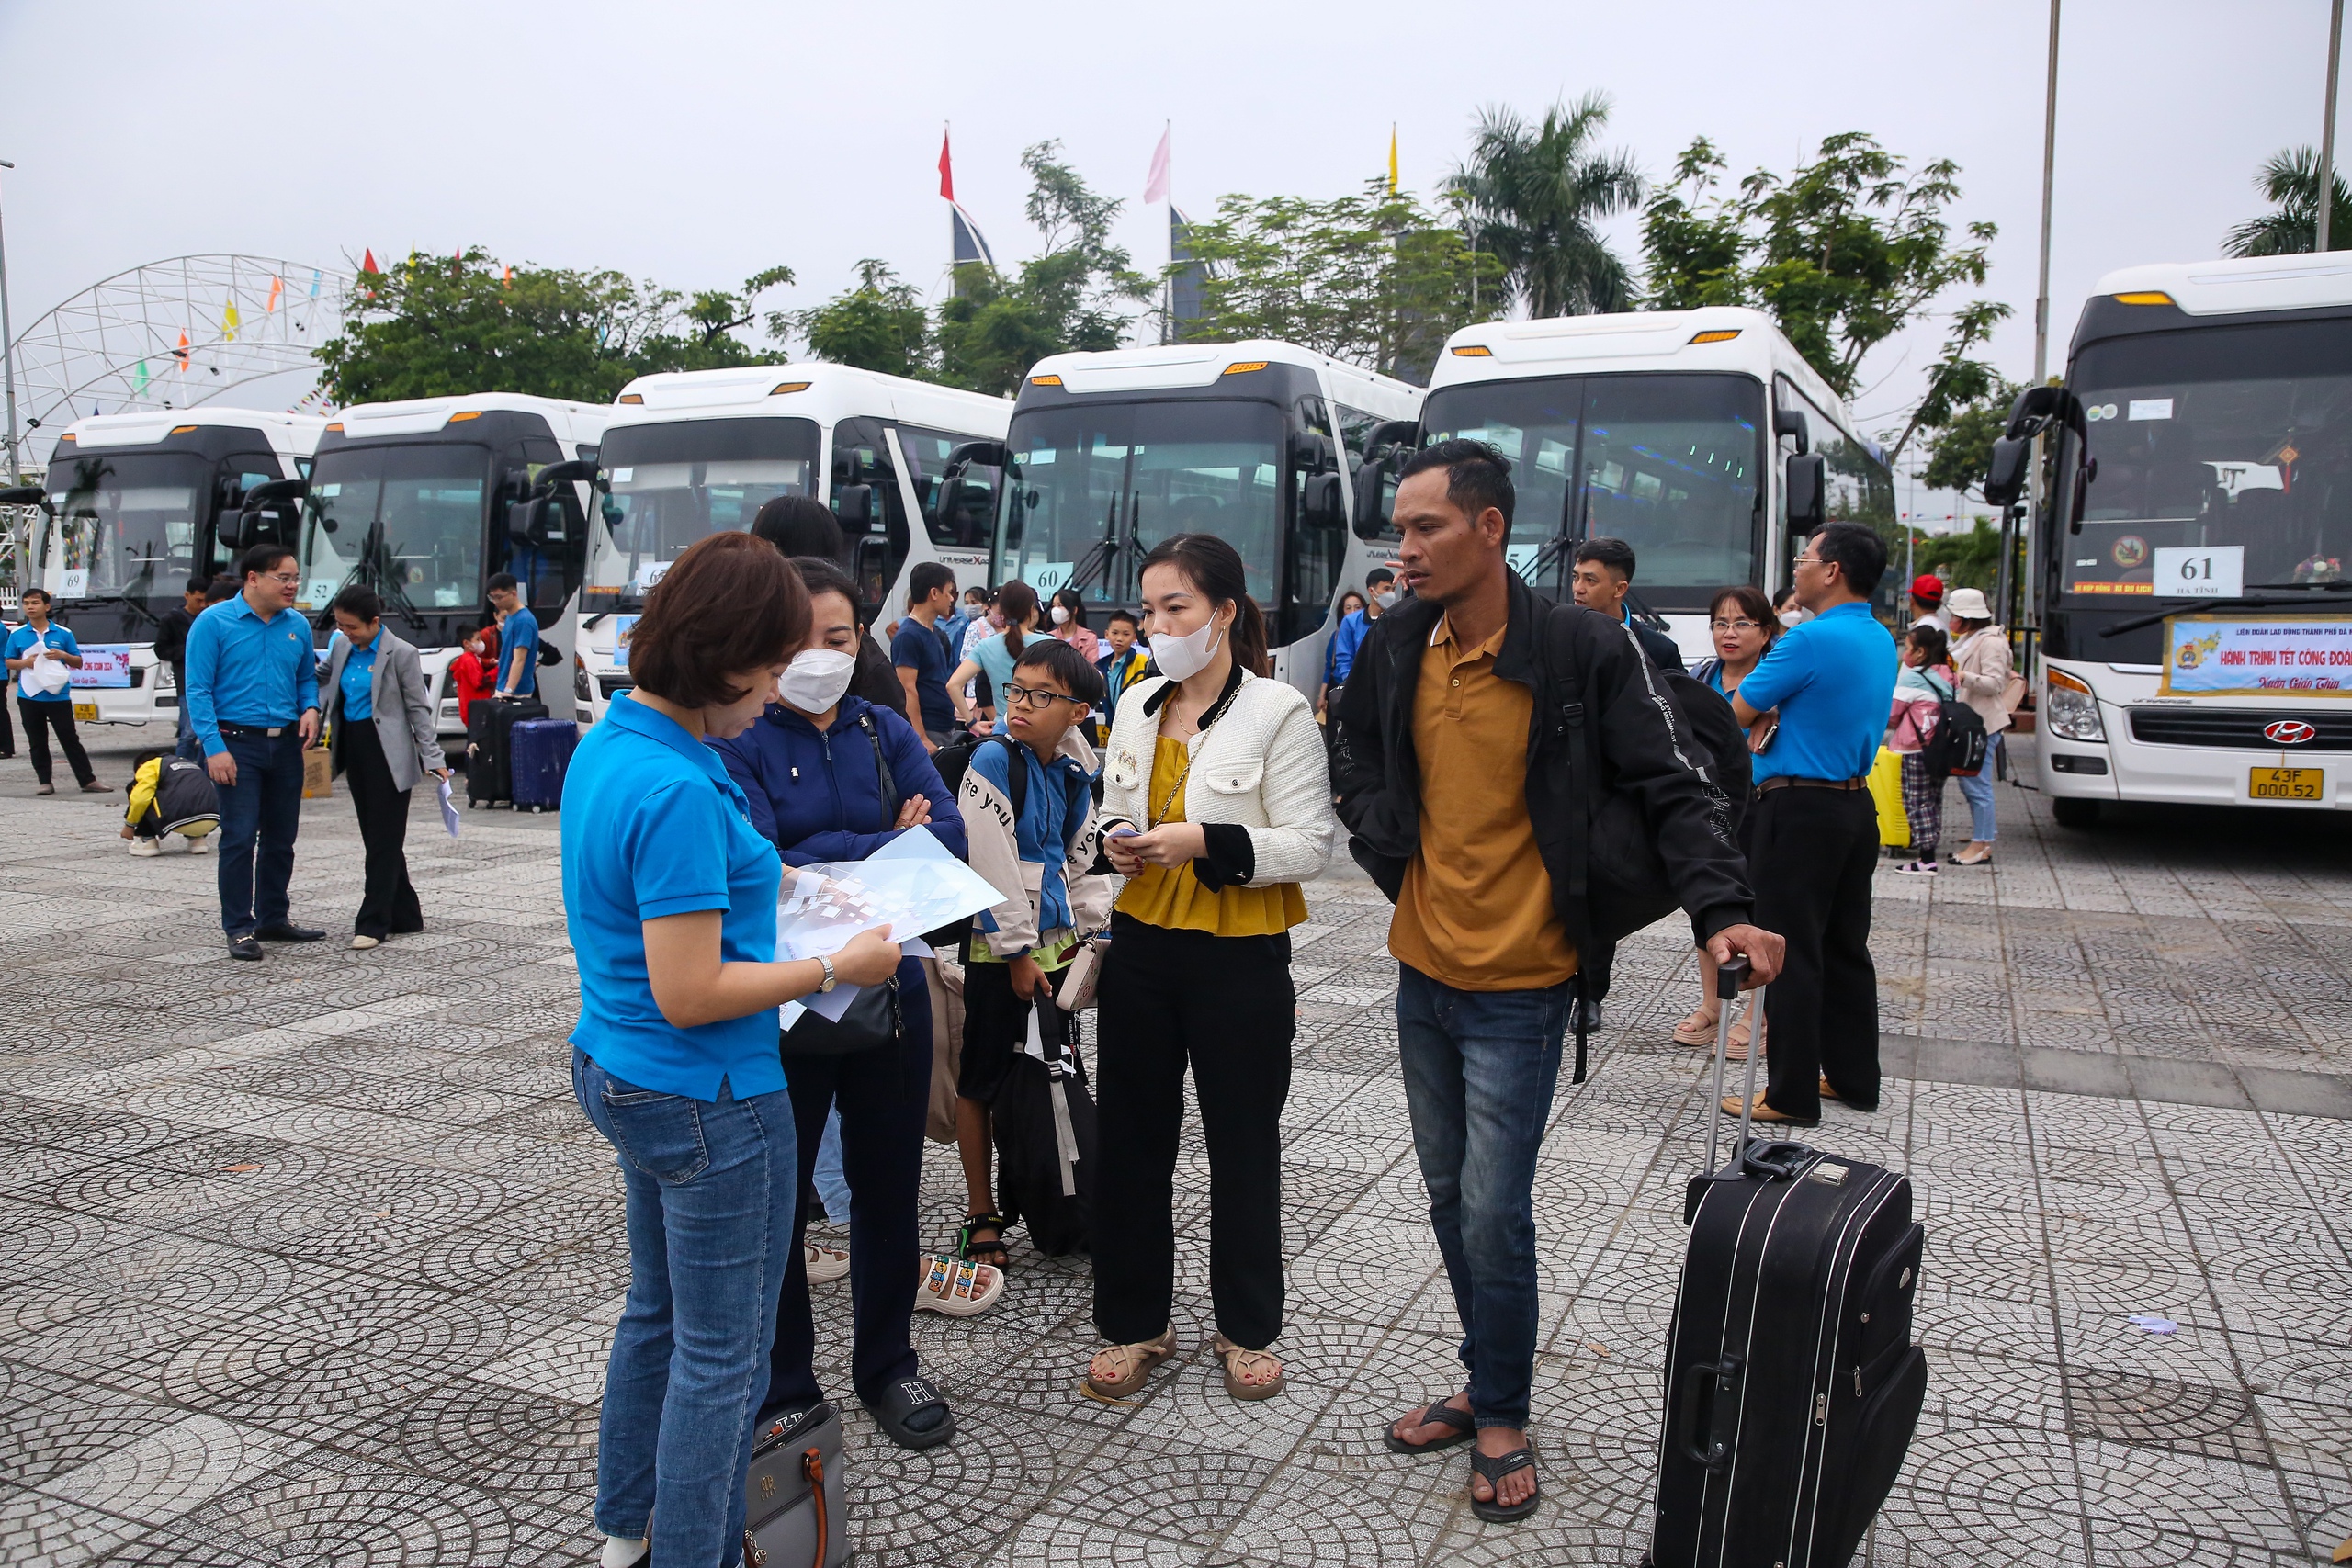 Niềm vui trên những chuyến xe 0 đồng cho hàng ngàn công nhân ở Đà Nẵng: “Tết chỉ trọn vẹn là khi được về nhà” - Ảnh 3.